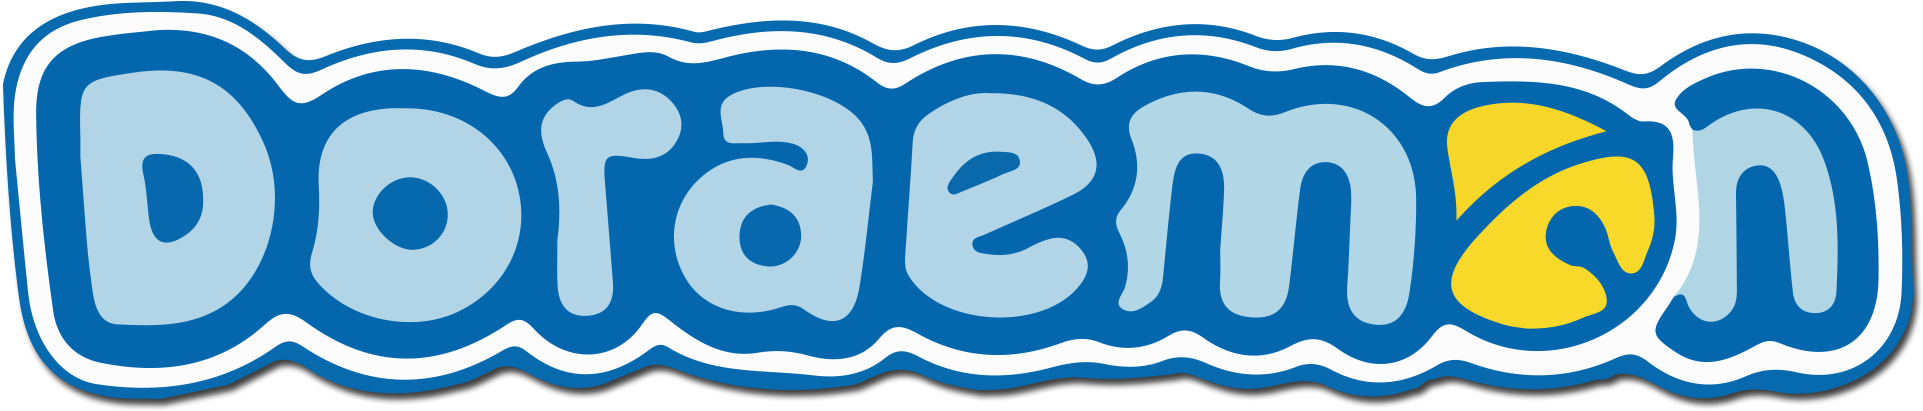 Doraemon Logo PNG-Bildhintergrund